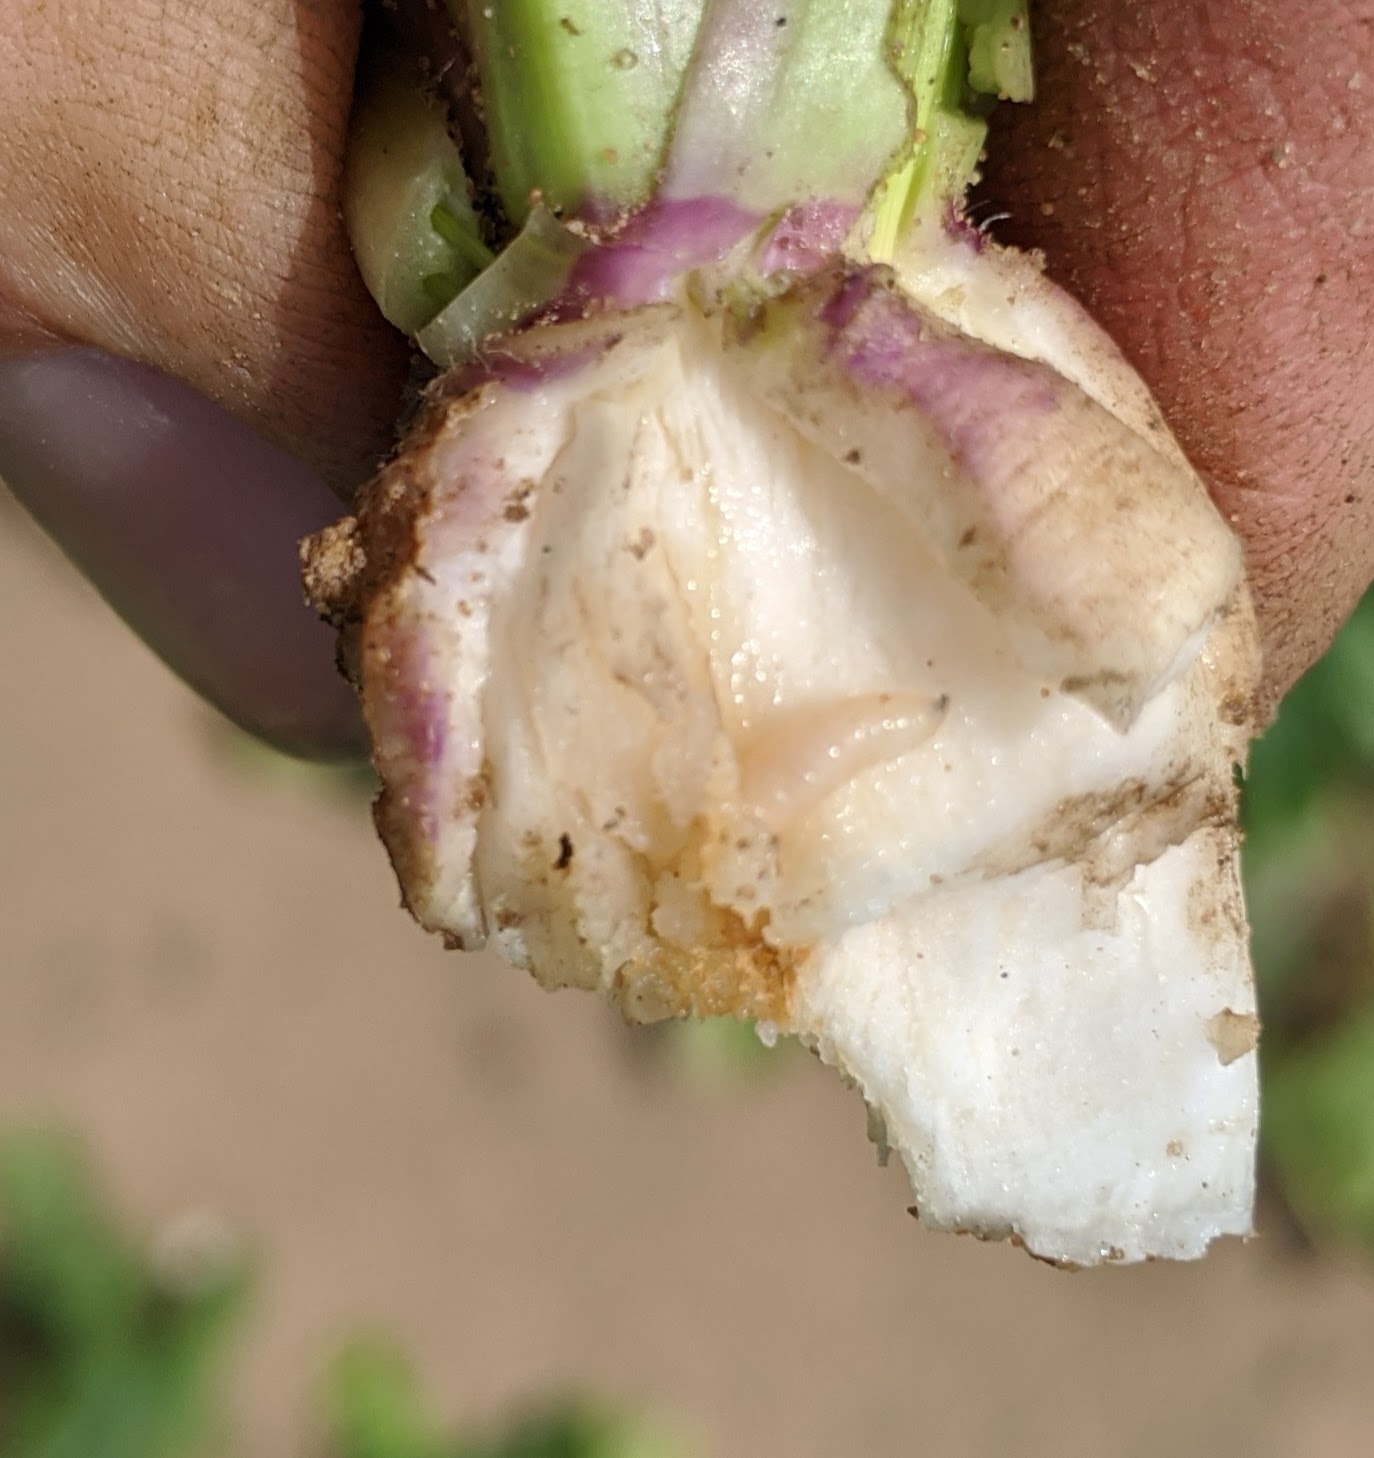 Cabbage maggot damage in turnip